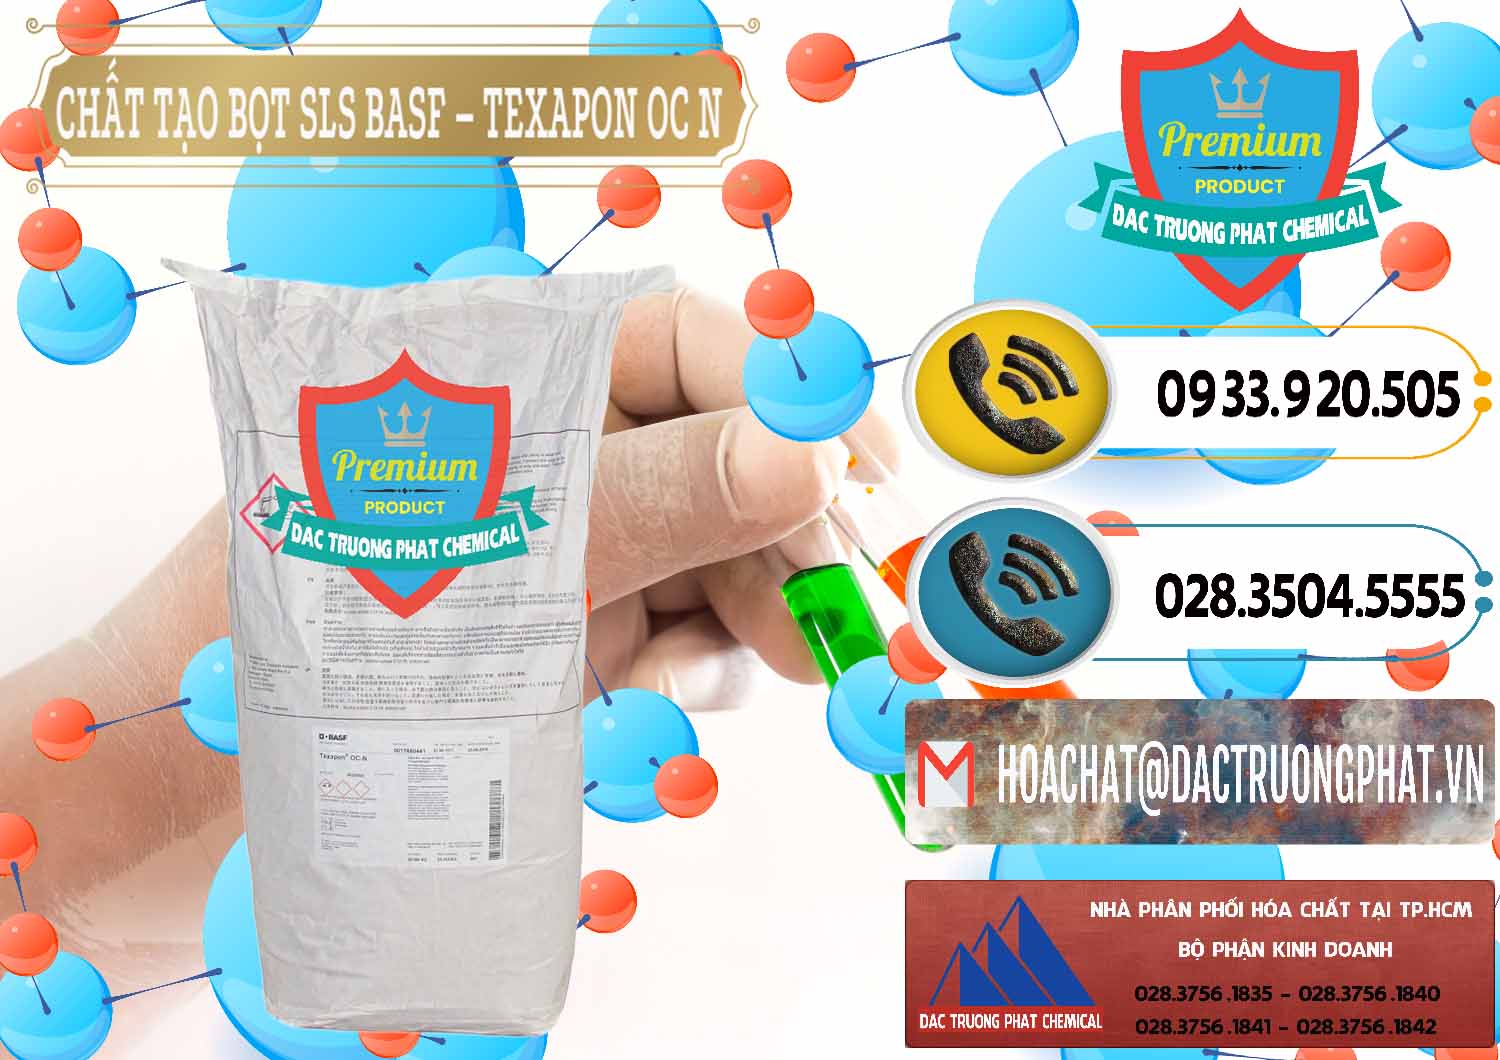 Đơn vị bán - cung cấp Chất Tạo Bọt SLS - Sodium Lauryl Sulfate BASF Texapon OC N - 0049 - Nơi cung cấp & bán hóa chất tại TP.HCM - hoachatdetnhuom.vn